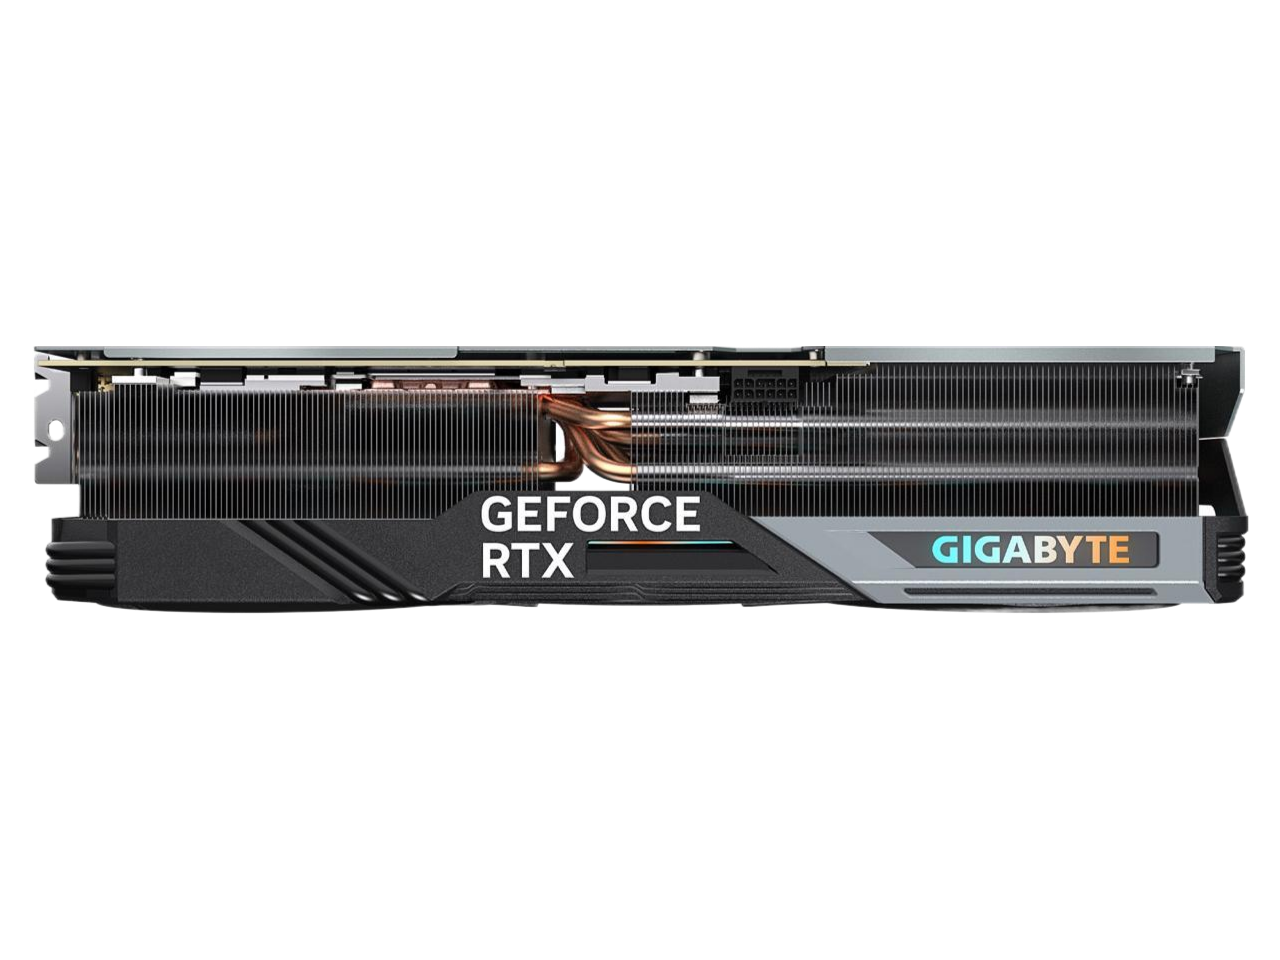 GIGABYTE Gaming GeForce RTX 4090 24GB GDDR6X PCI Express 4.0 x16 ATX Video Card GV-N4090GAMING OC-24GD